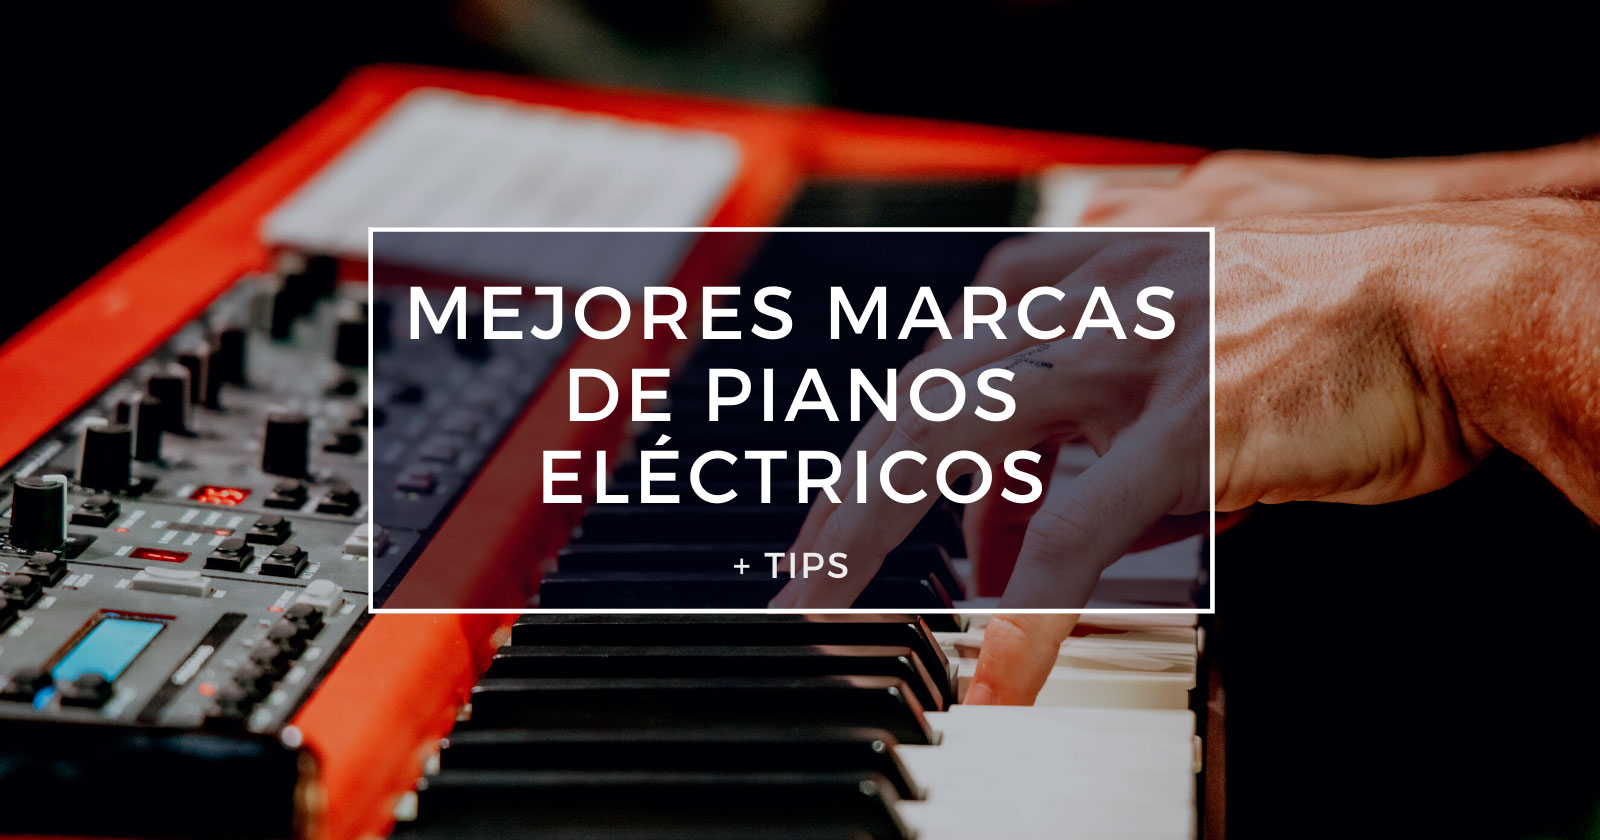 6 las de Pianos Eléctricos + Tips - MusicaPod